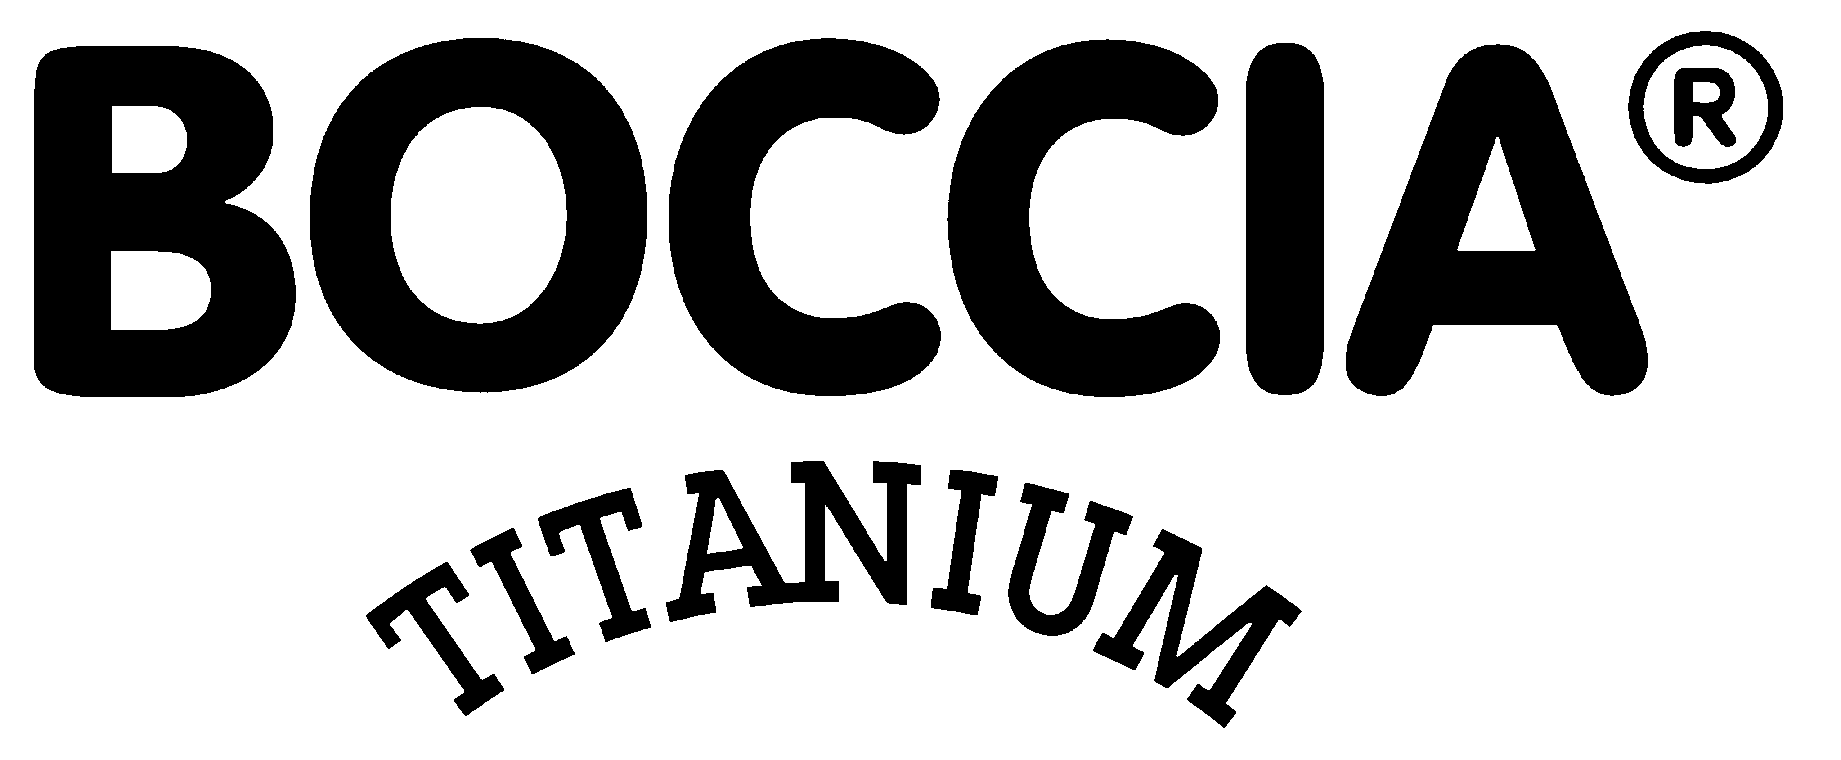 Logo Boccia titanium relatie ringen